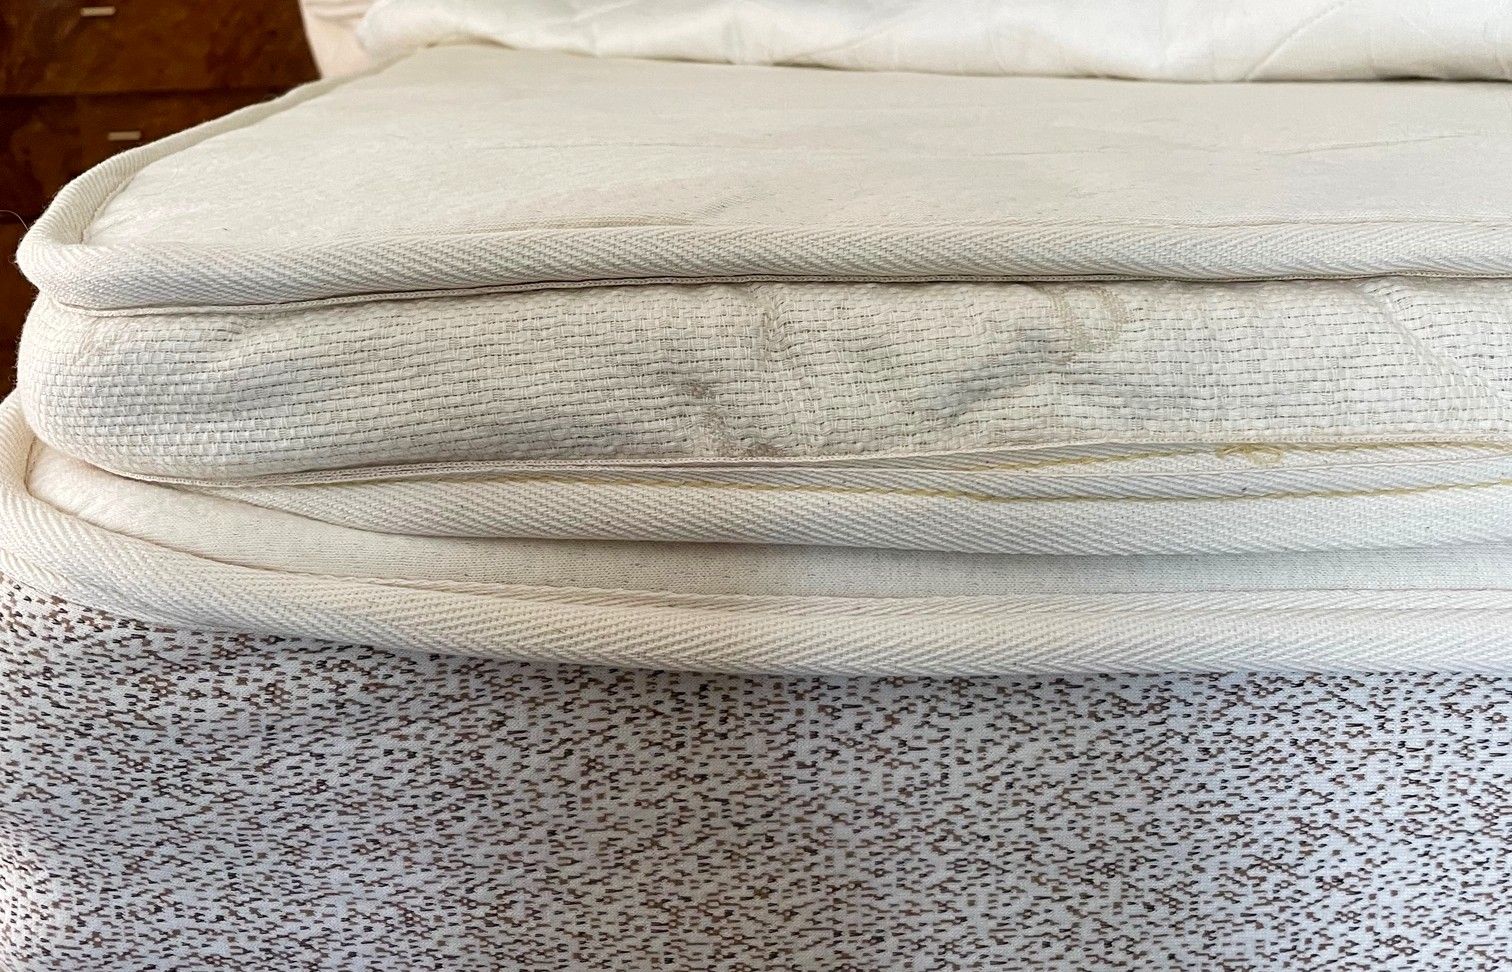 birch plush organic mattress topper reviews